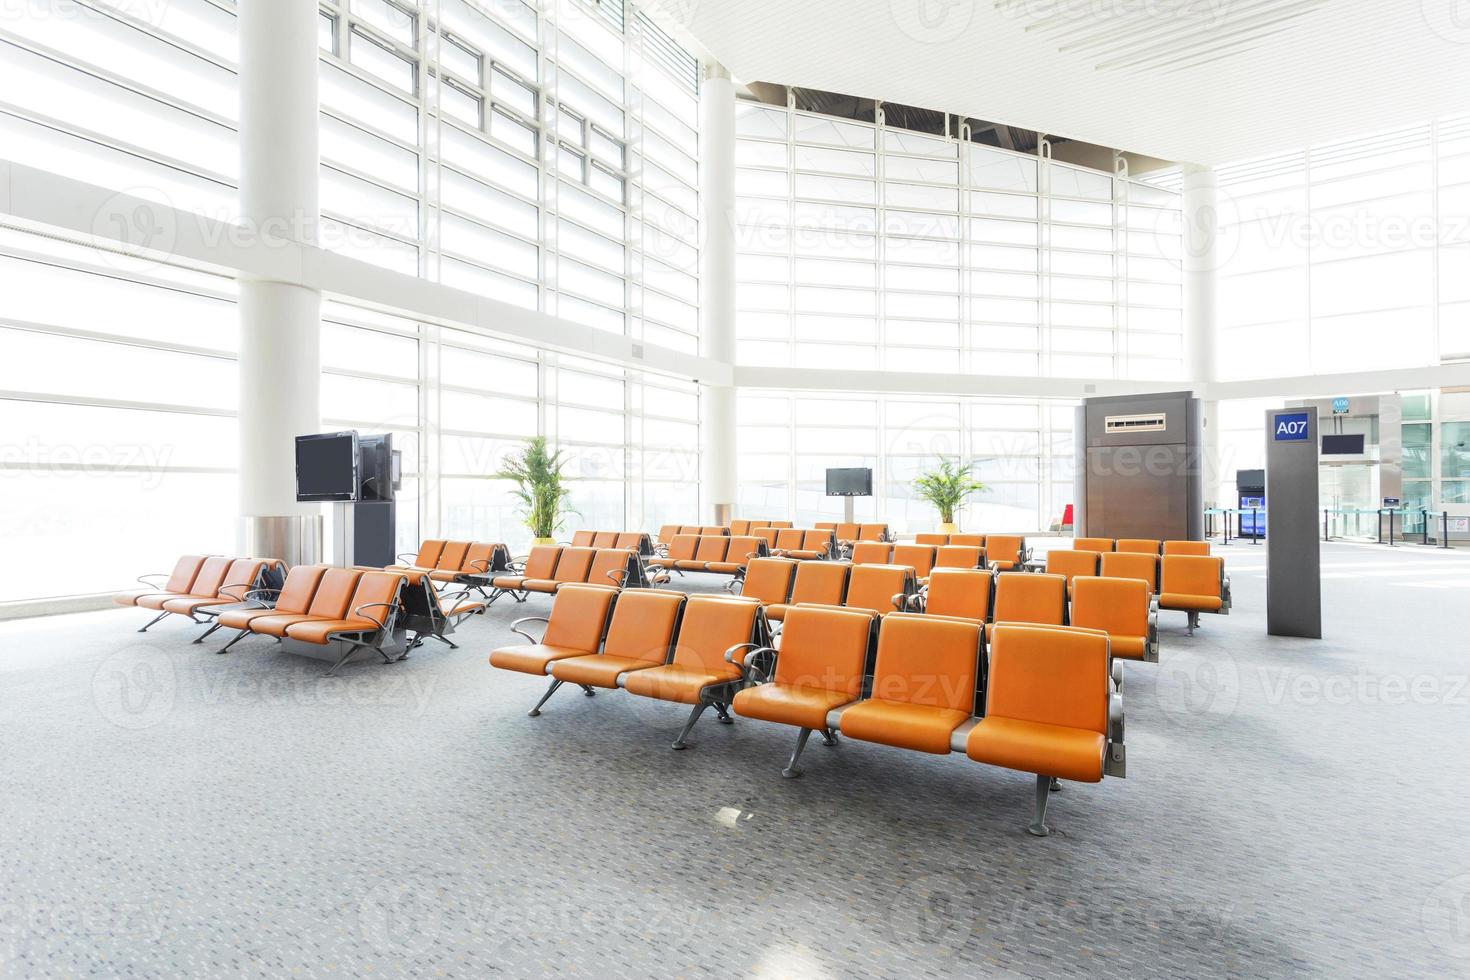 Innenraum der modernen Wartehalle des Flughafens foto